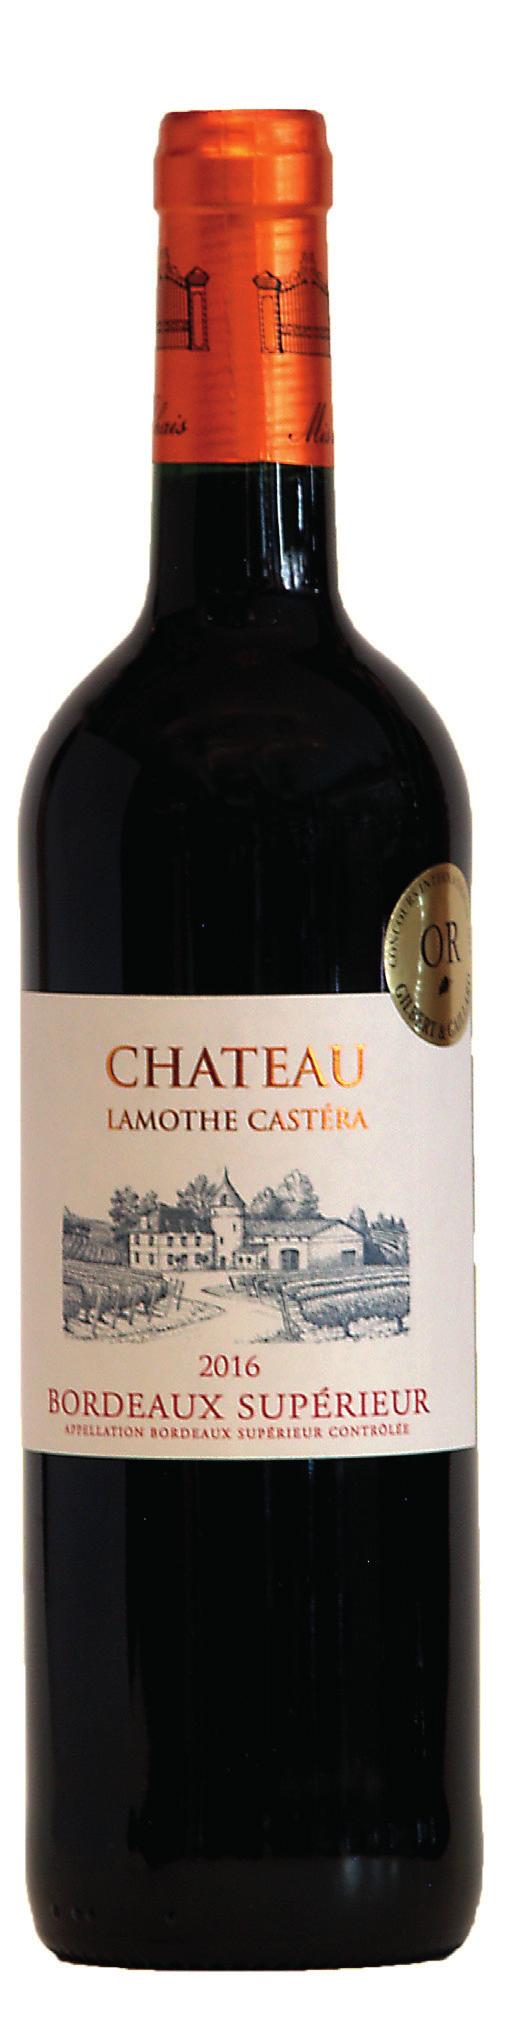 Château Lamothe-Castera Bordeaux Supérieur 2016 85% Cabernet Sauvignon 15% Merlot Questo vino dai profumi intensi ha un delizioso bouquet fresco e fruttato, che viene esaltato